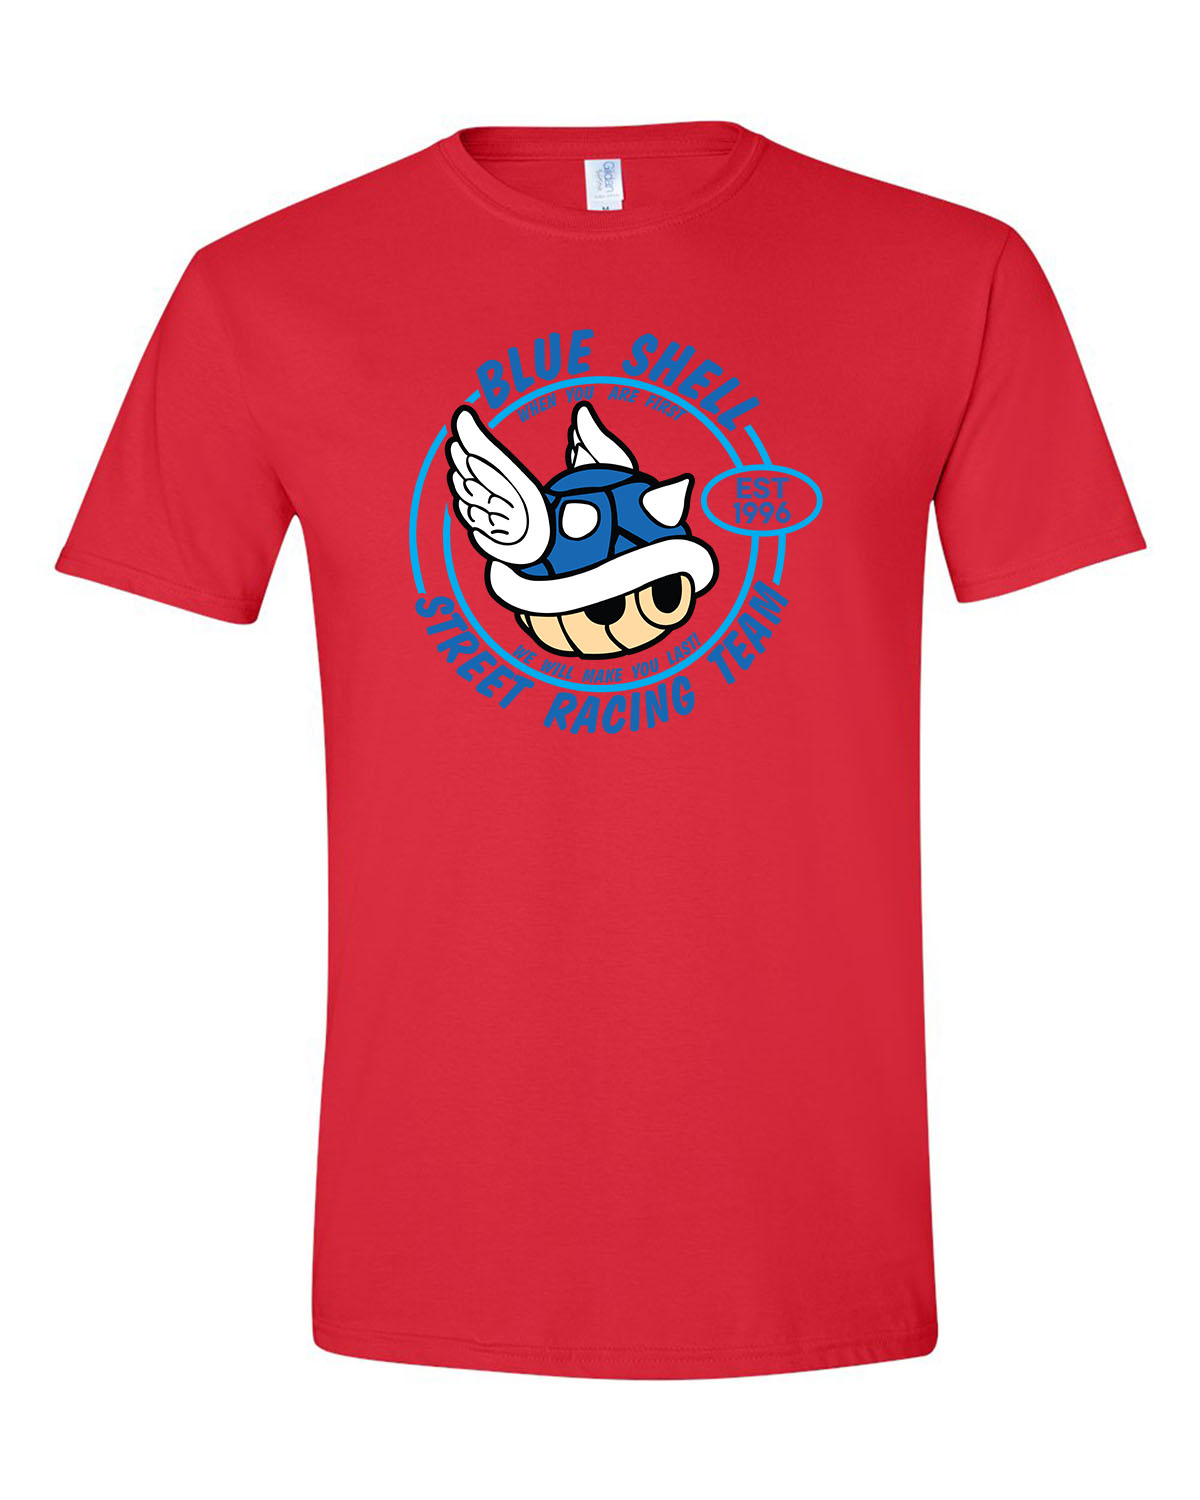 Blue Shell Street Racing Team Unisex T-Shirt